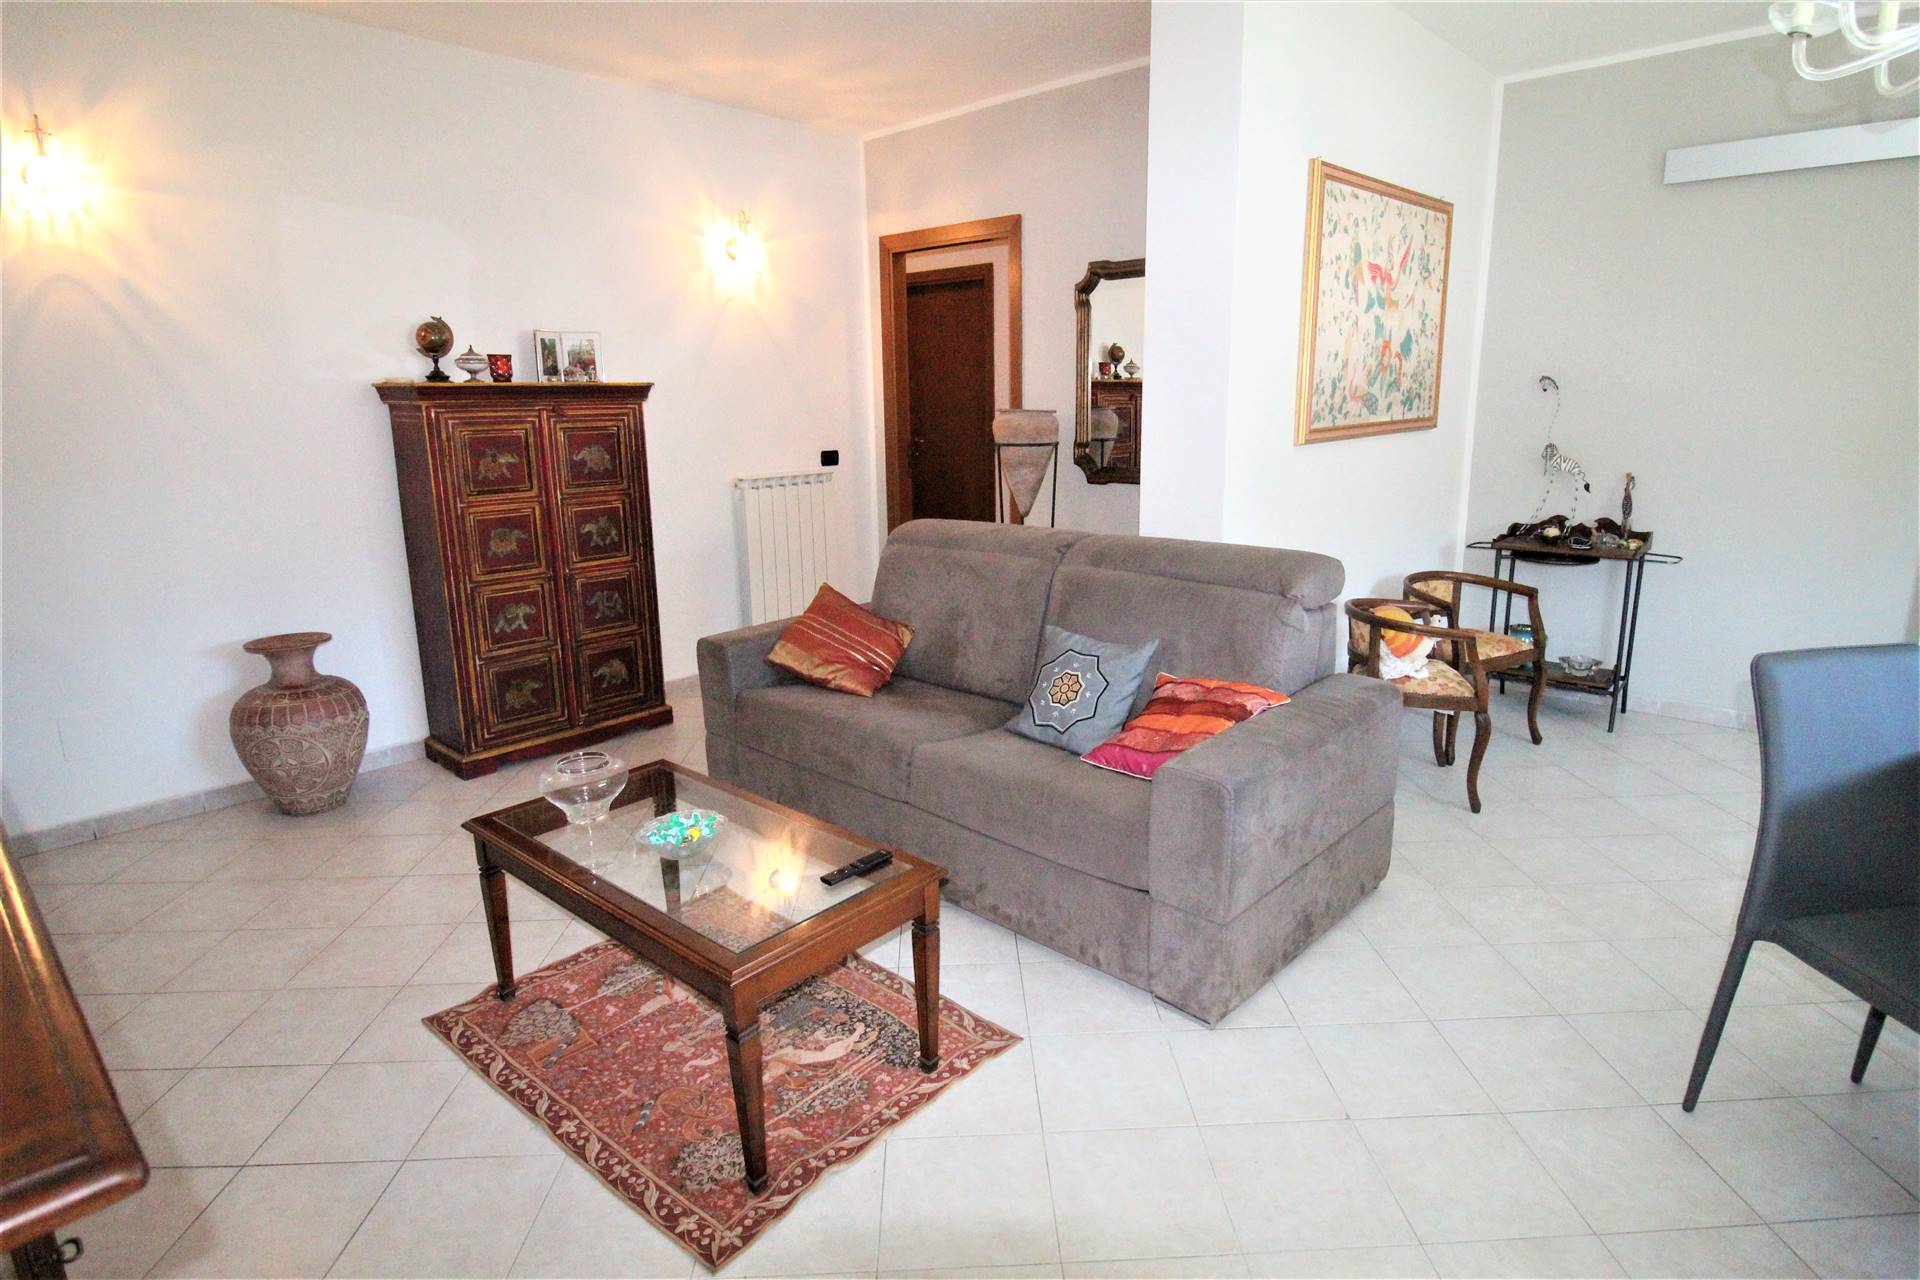 Appartamento in vendita a Aulla, 7 locali, prezzo € 158.000 | PortaleAgenzieImmobiliari.it